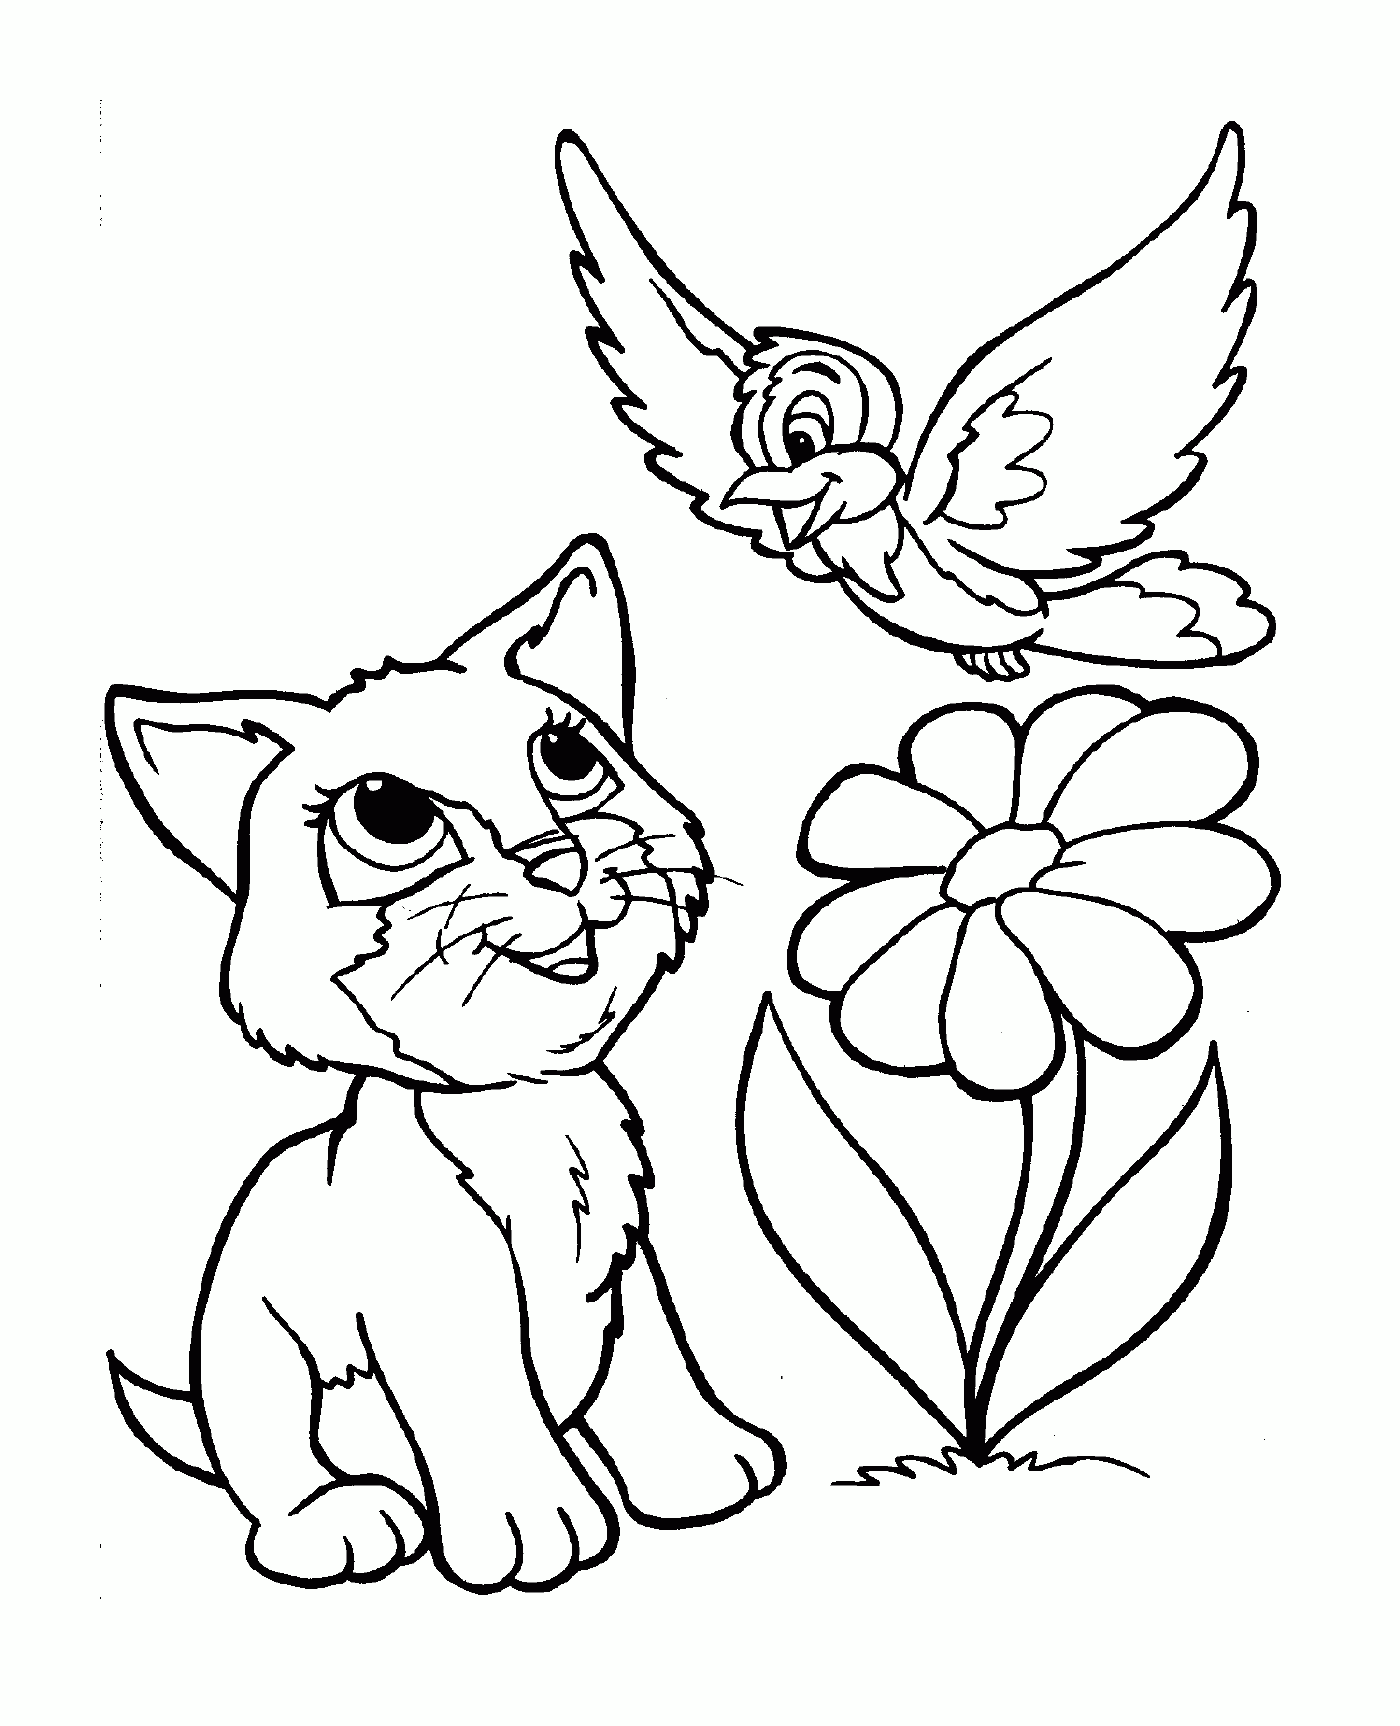   Un chat ami avec un oiseau, assis à côté d'une fleur 